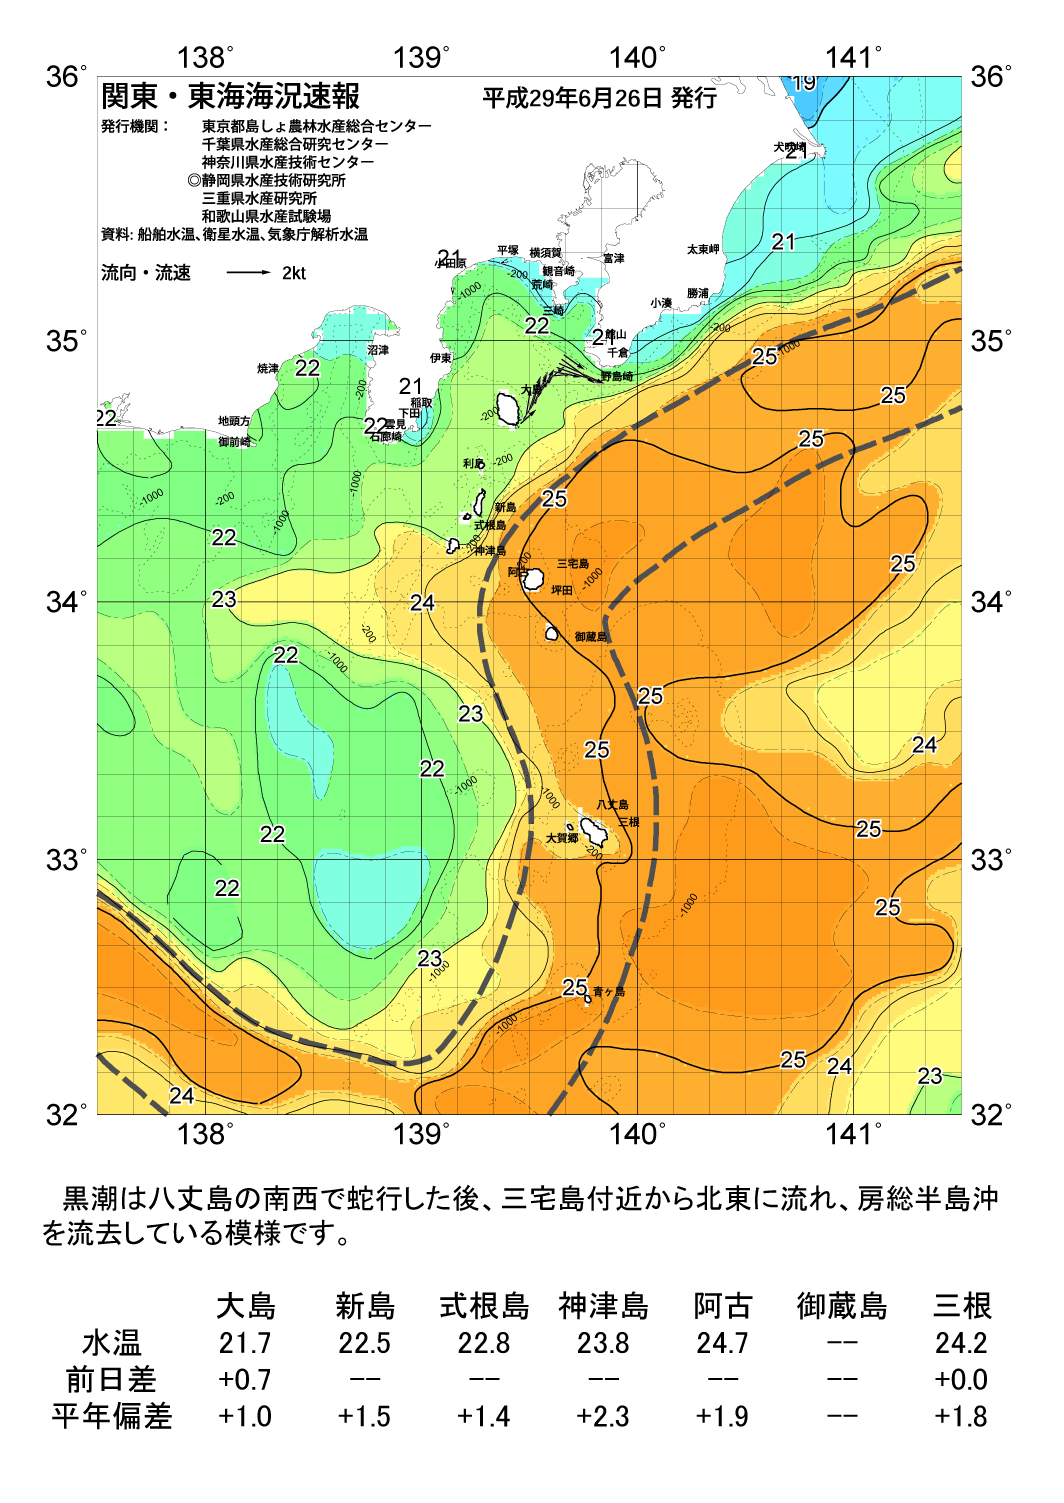 海の天気図2017年6月26日 東京都島しょ農林水産総合センター